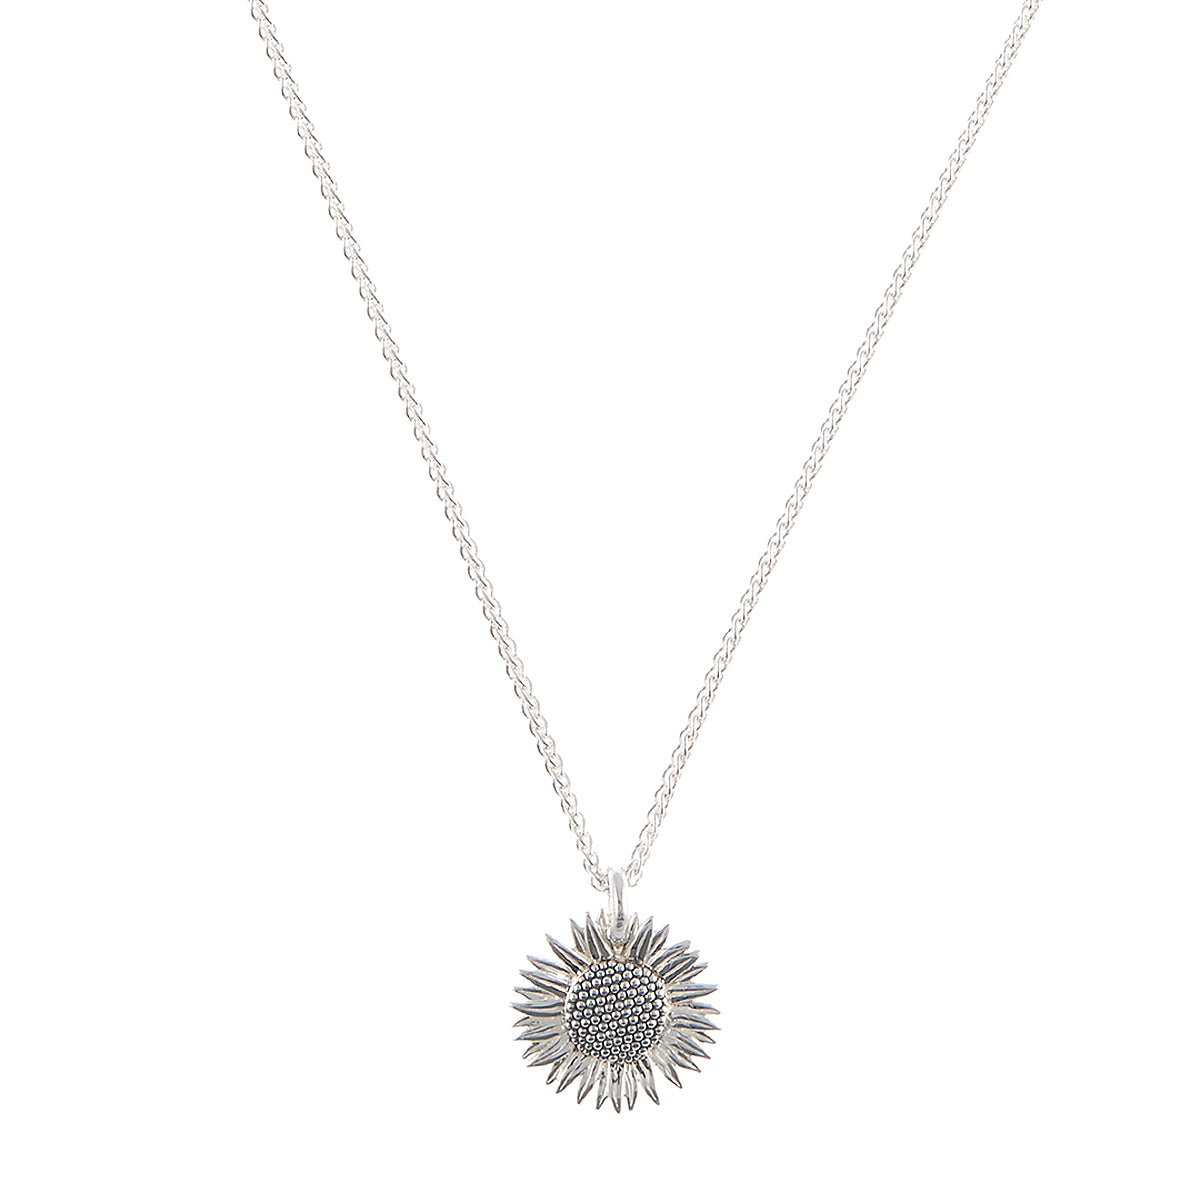 Sunflower Silver Necklace - Scarlett Jewellery